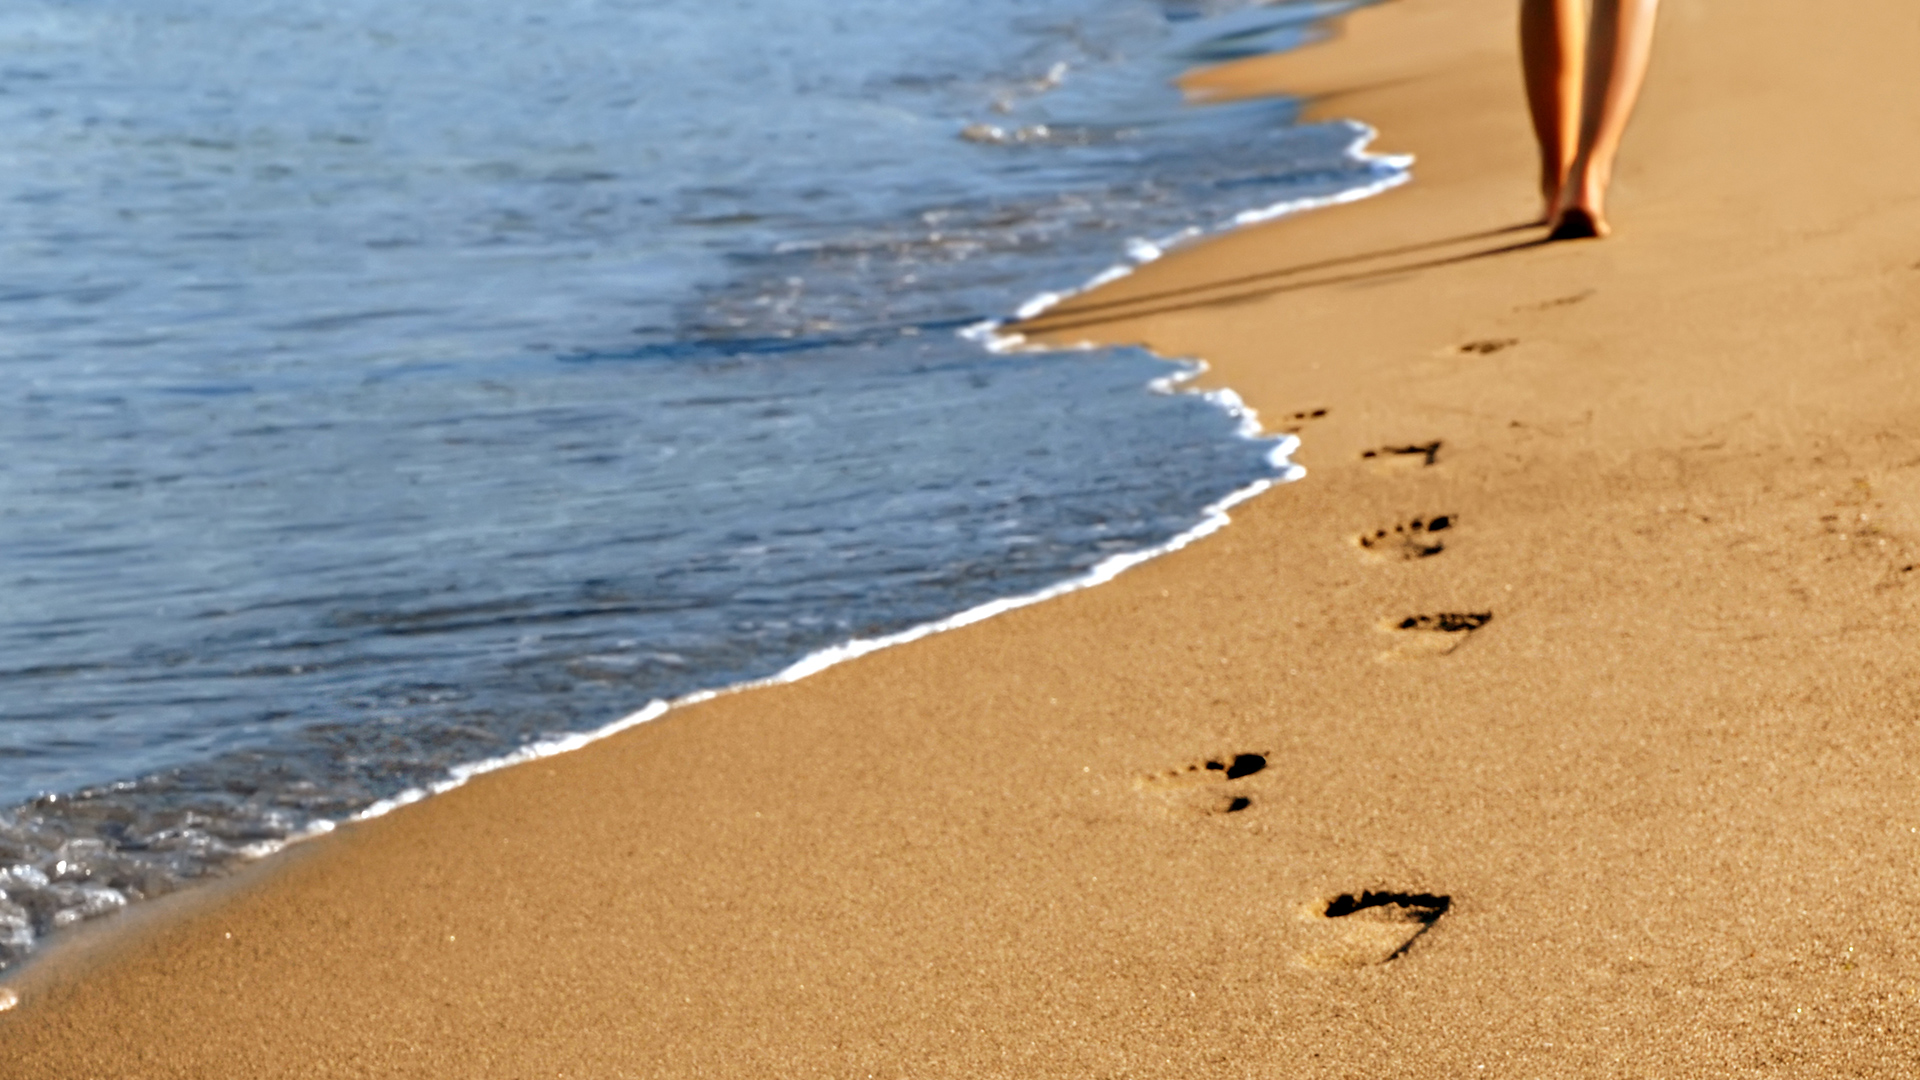 Лесбиянки голые используют самотык для оргазма на песке у моря